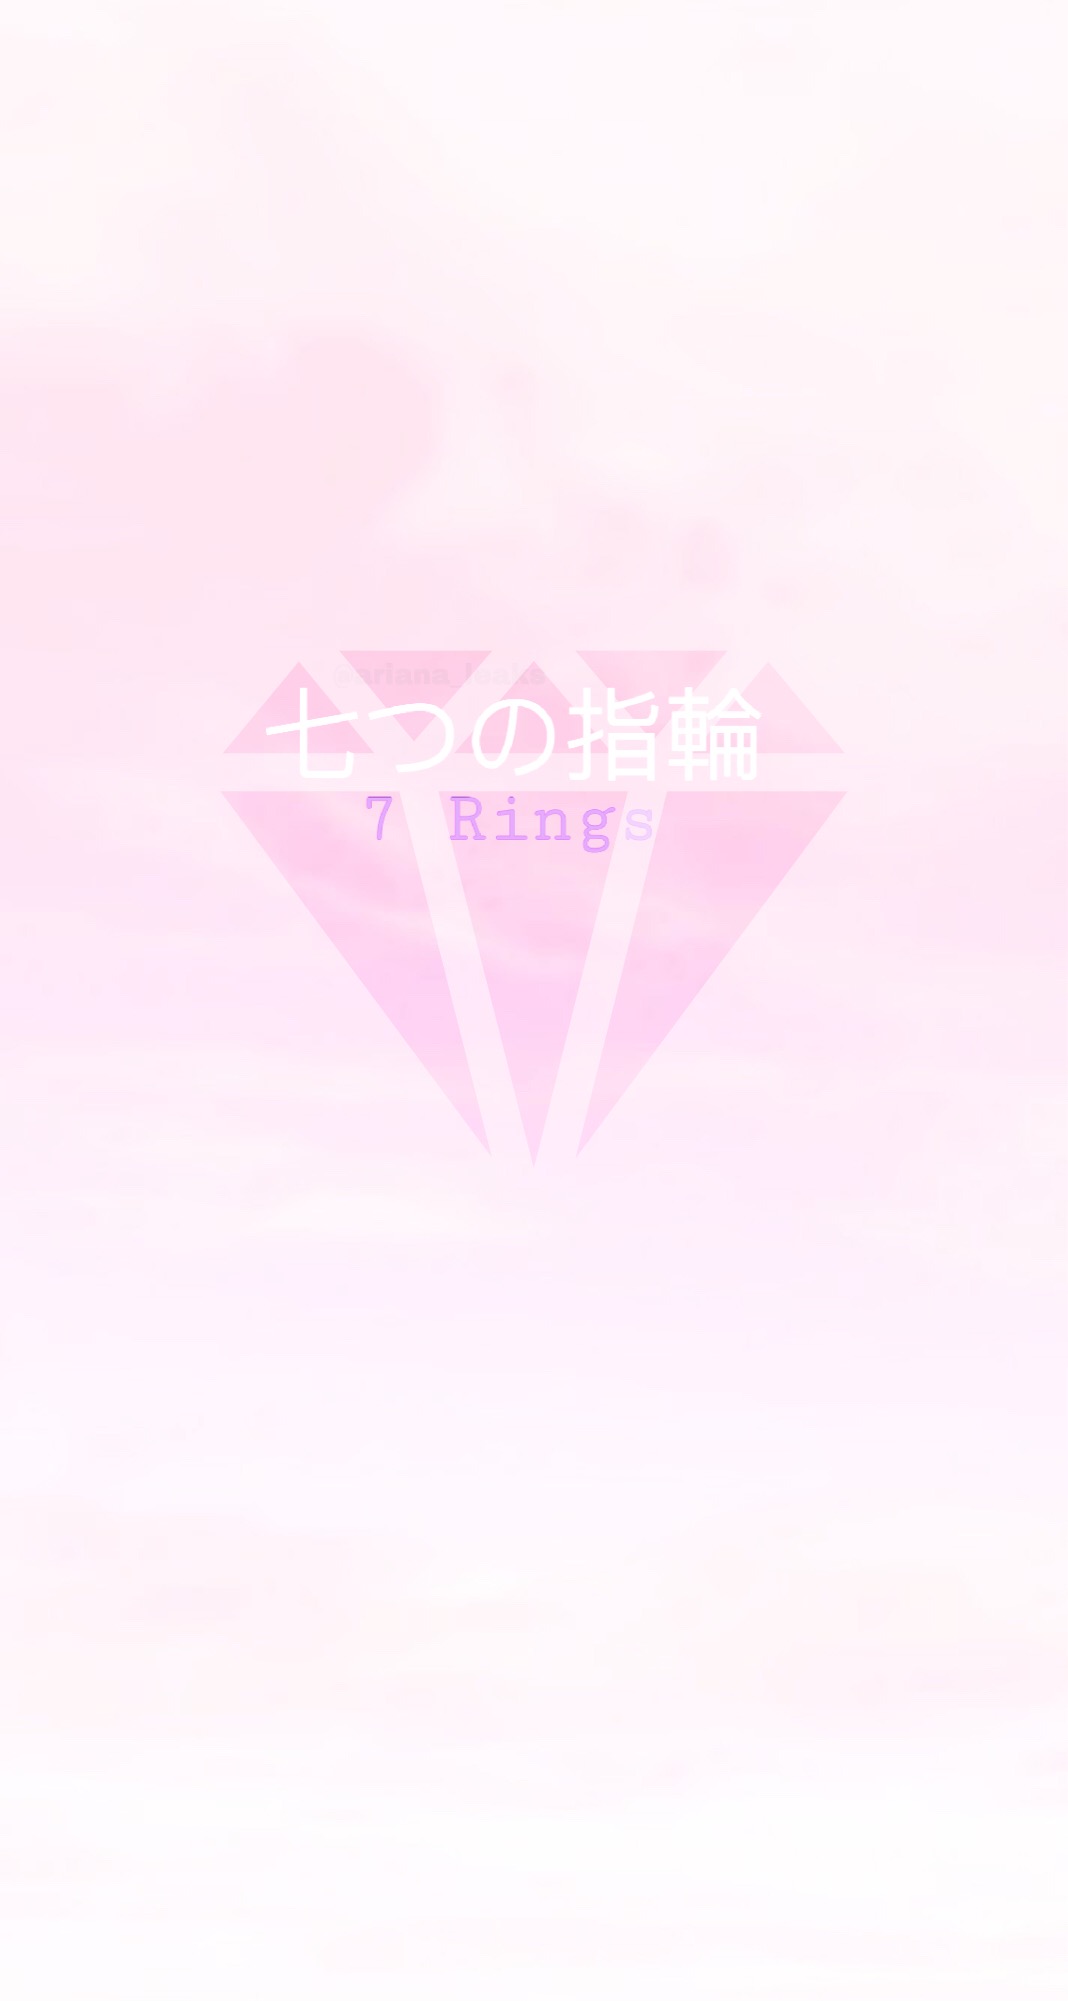 7 rings ariana grande logo